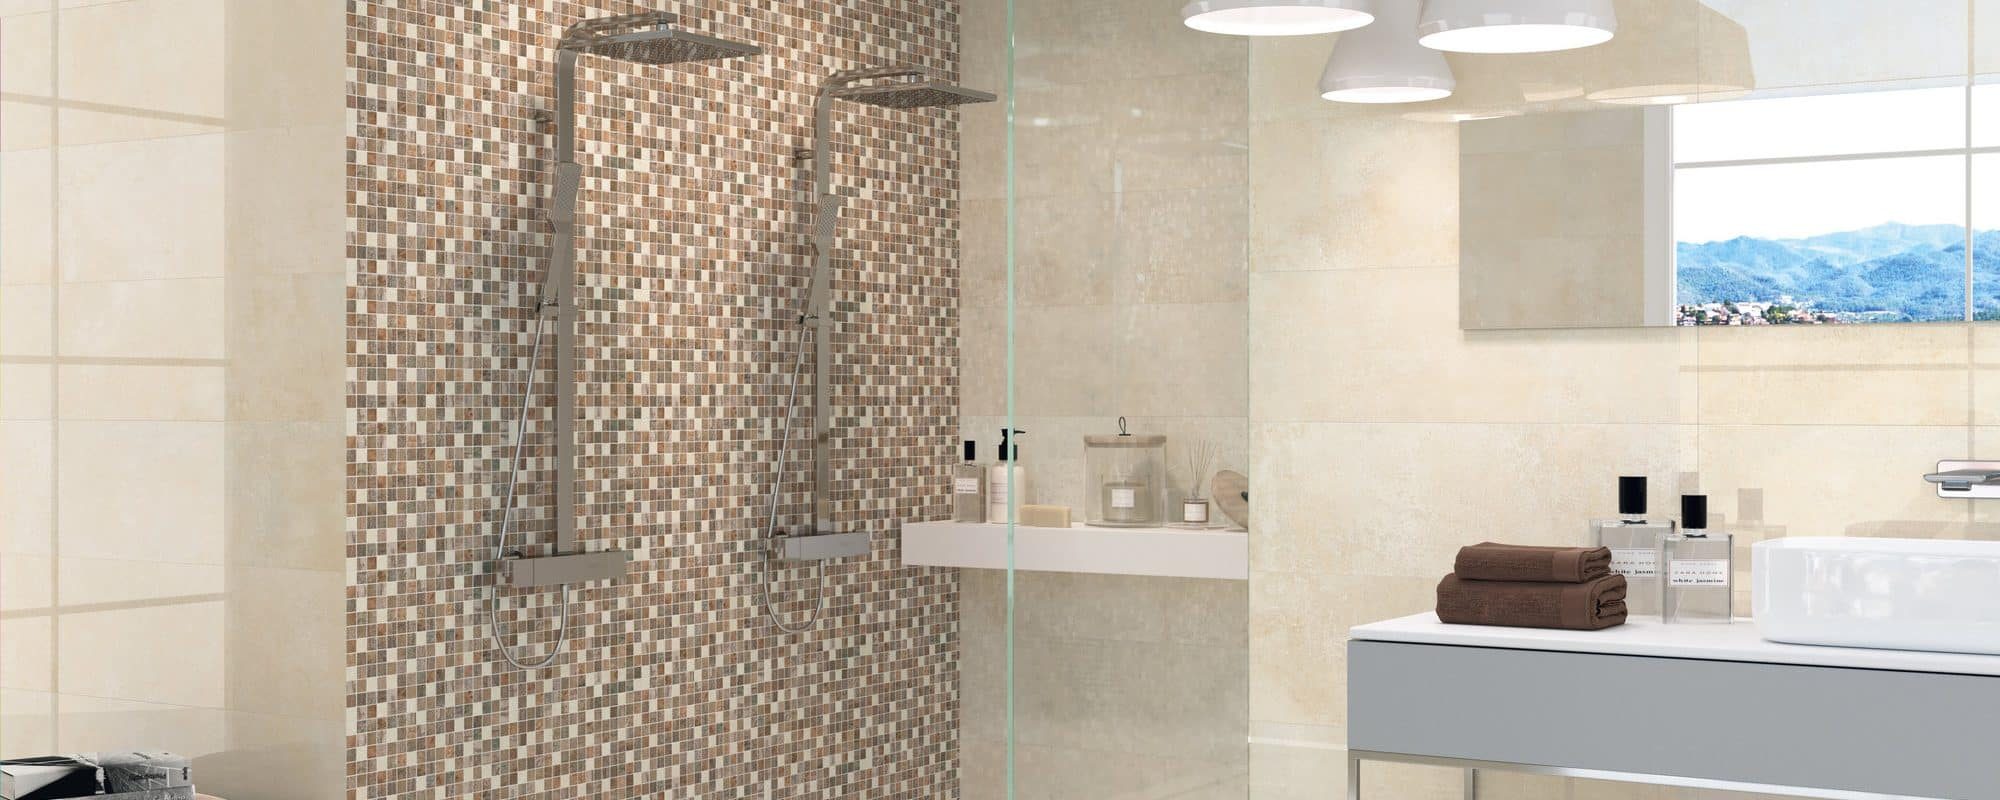 Cement Tiles Porcelain Tiles for bathroom uk slider 8